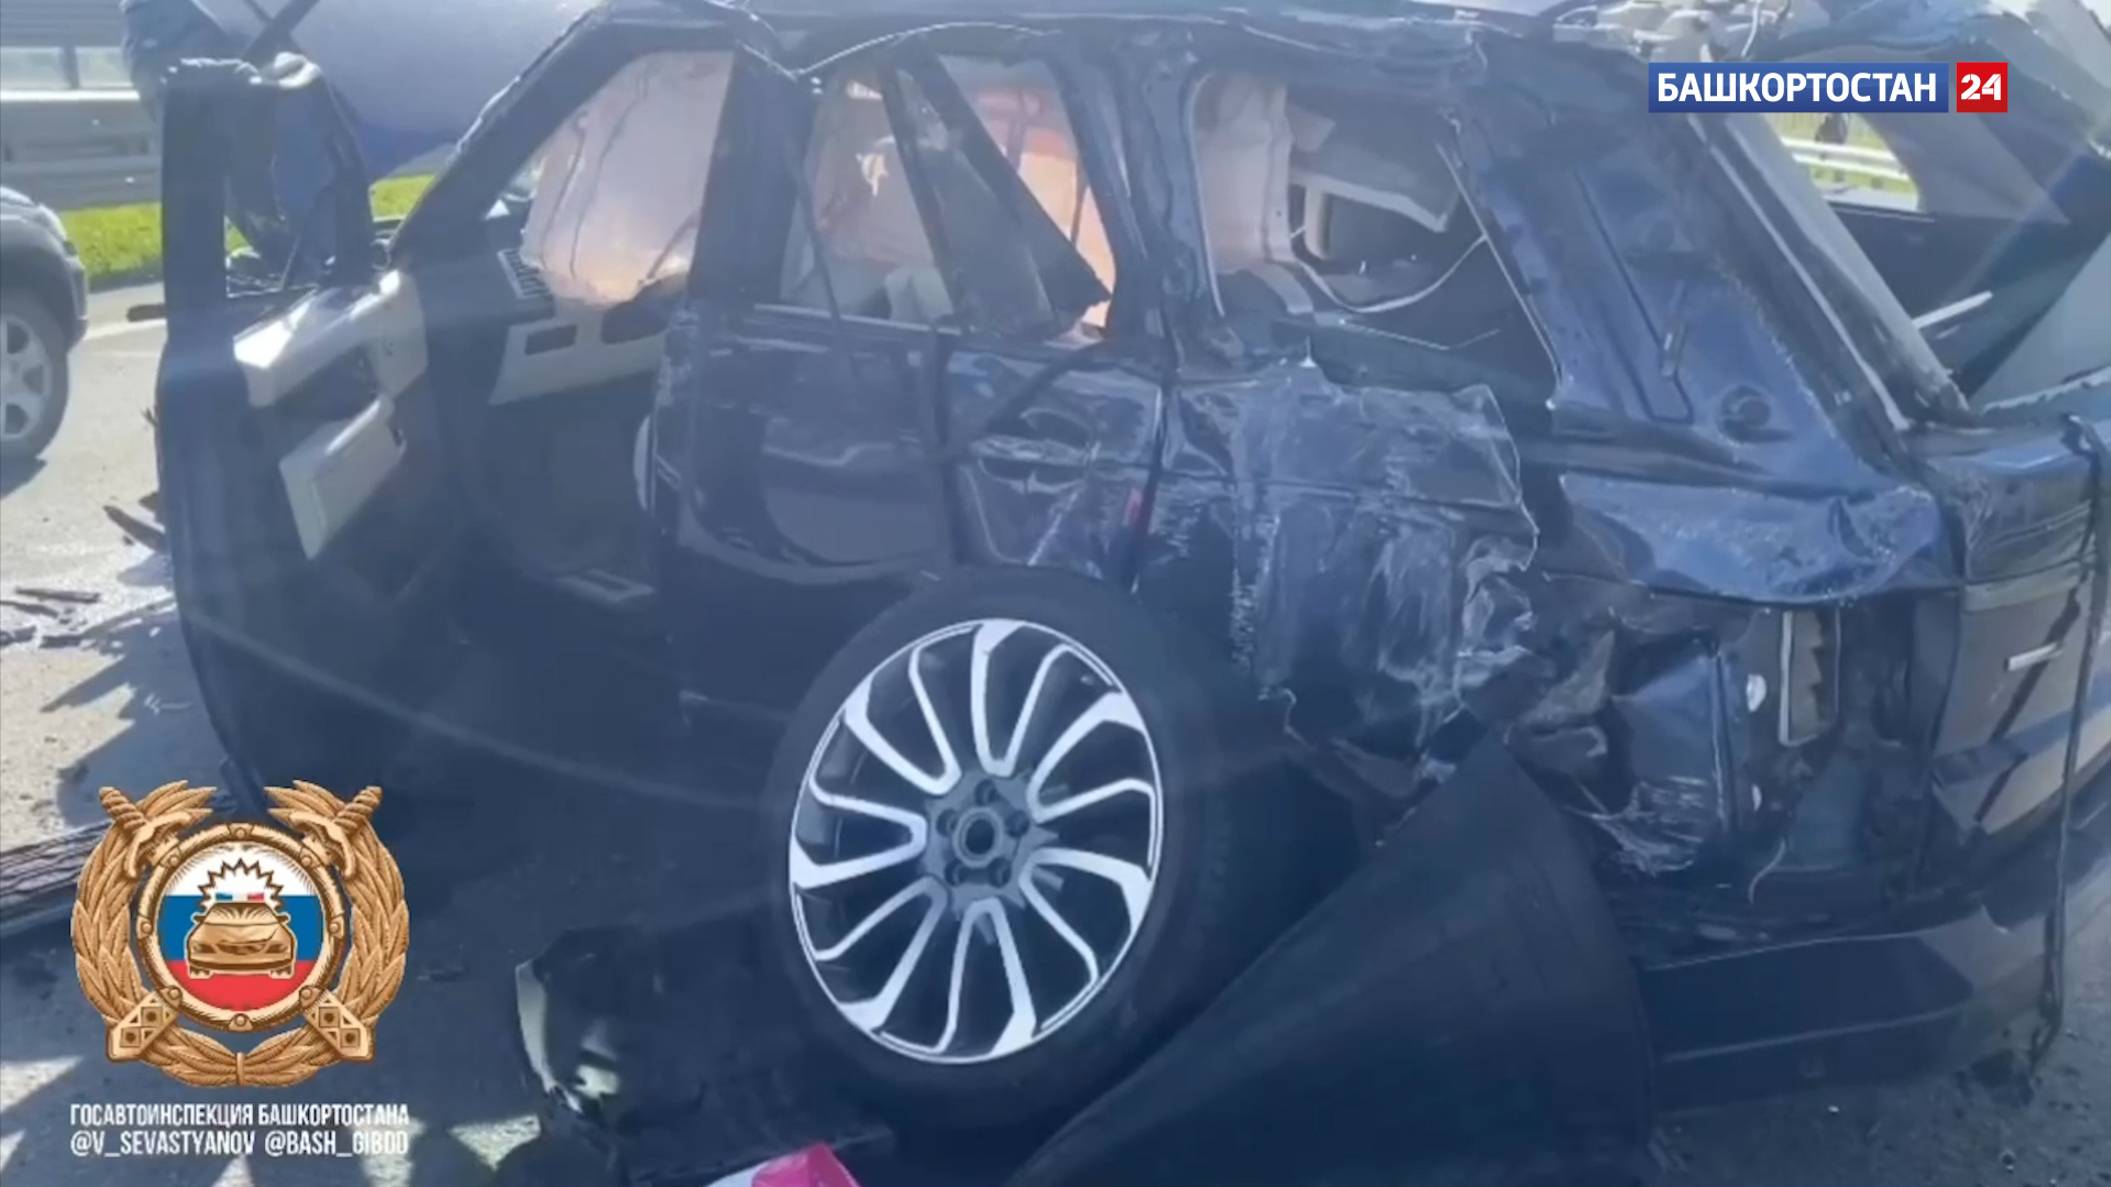 Появилось видео с места смертельной аварии на трассе в Башкирии, где погиб водитель Land Rover